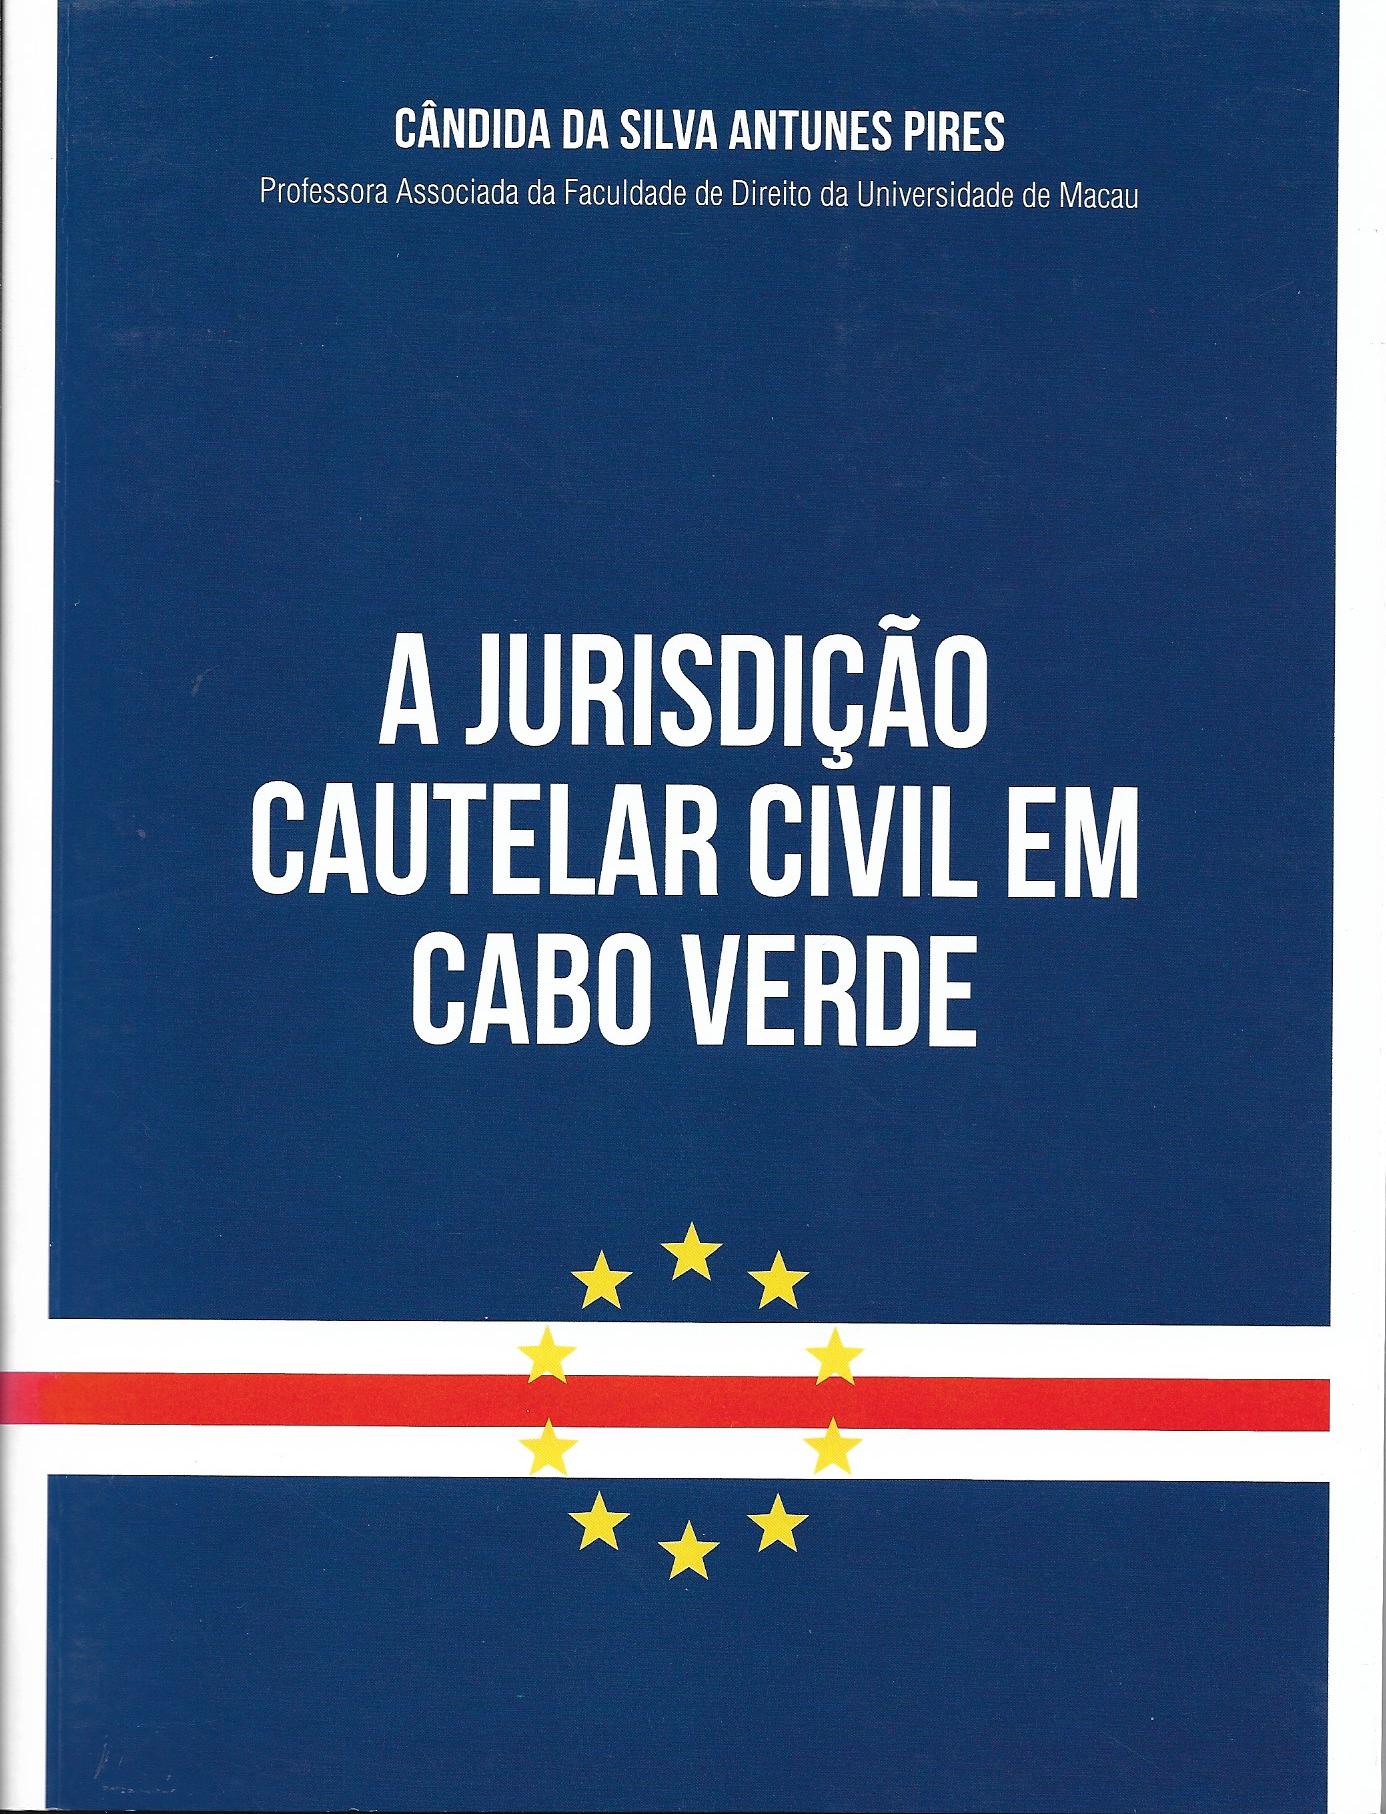 A Jurisdição Cautelar Civil em Cabo Verde